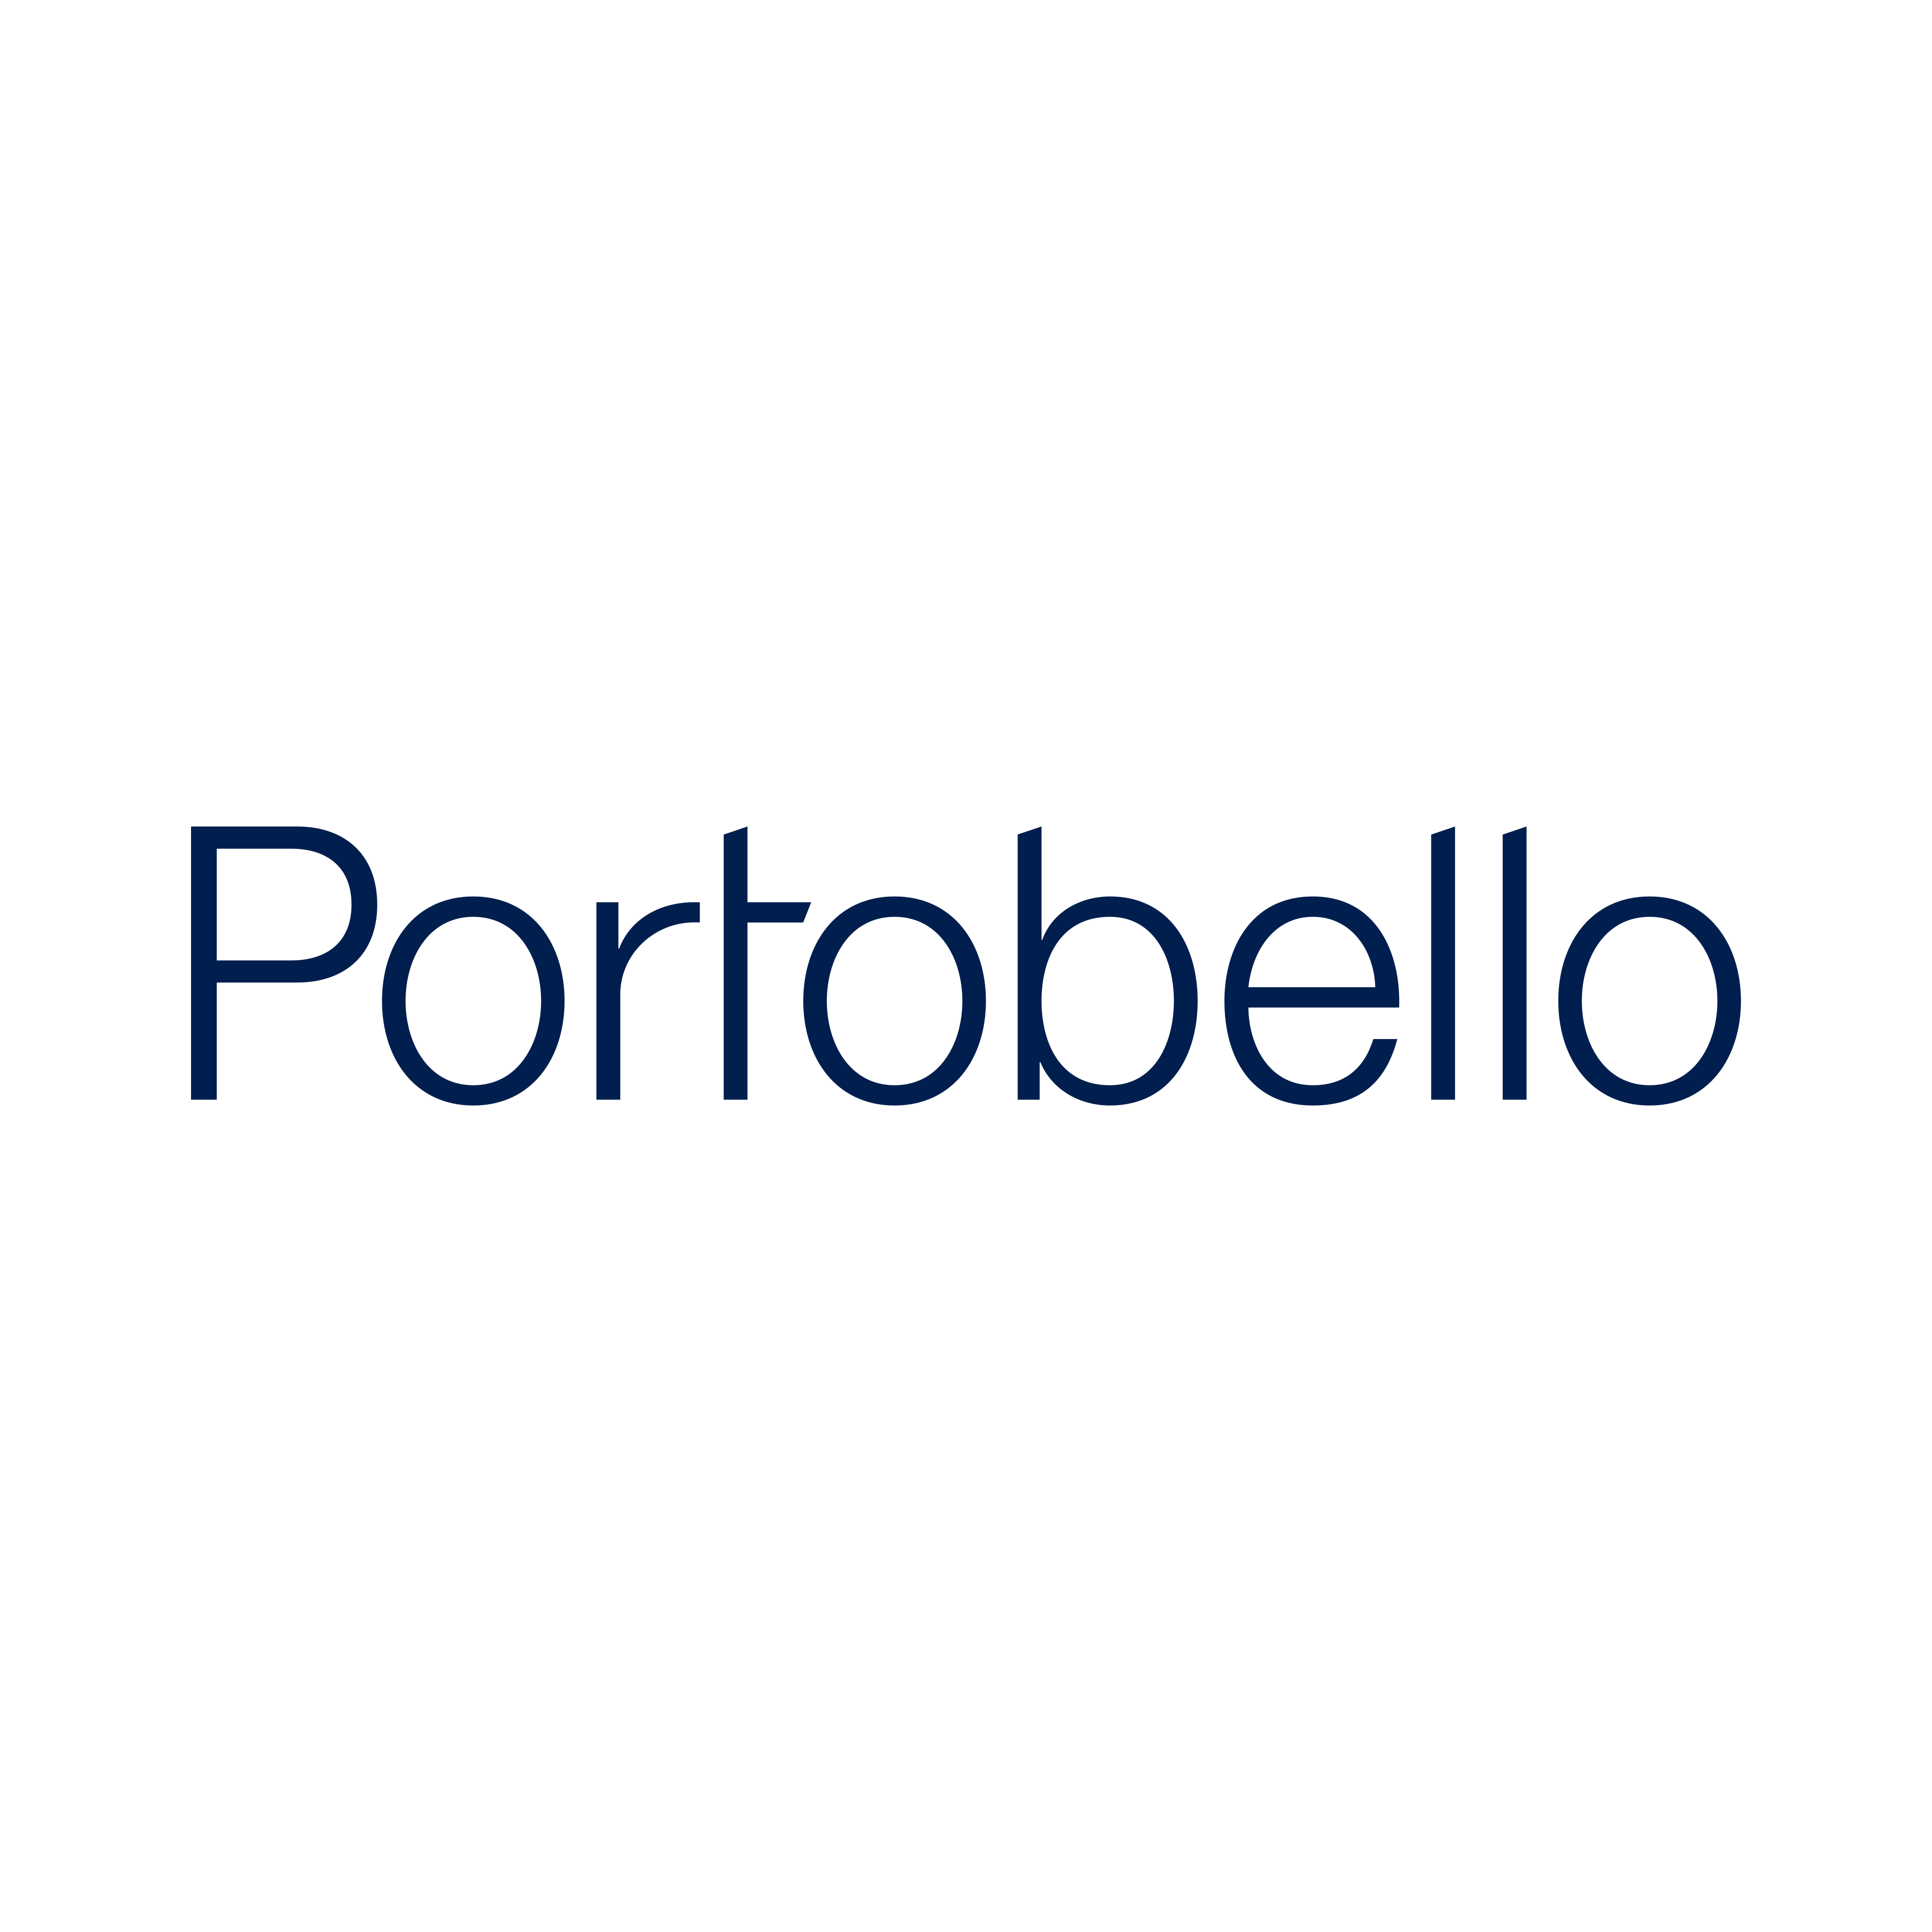 Logo marca nacional Portobello